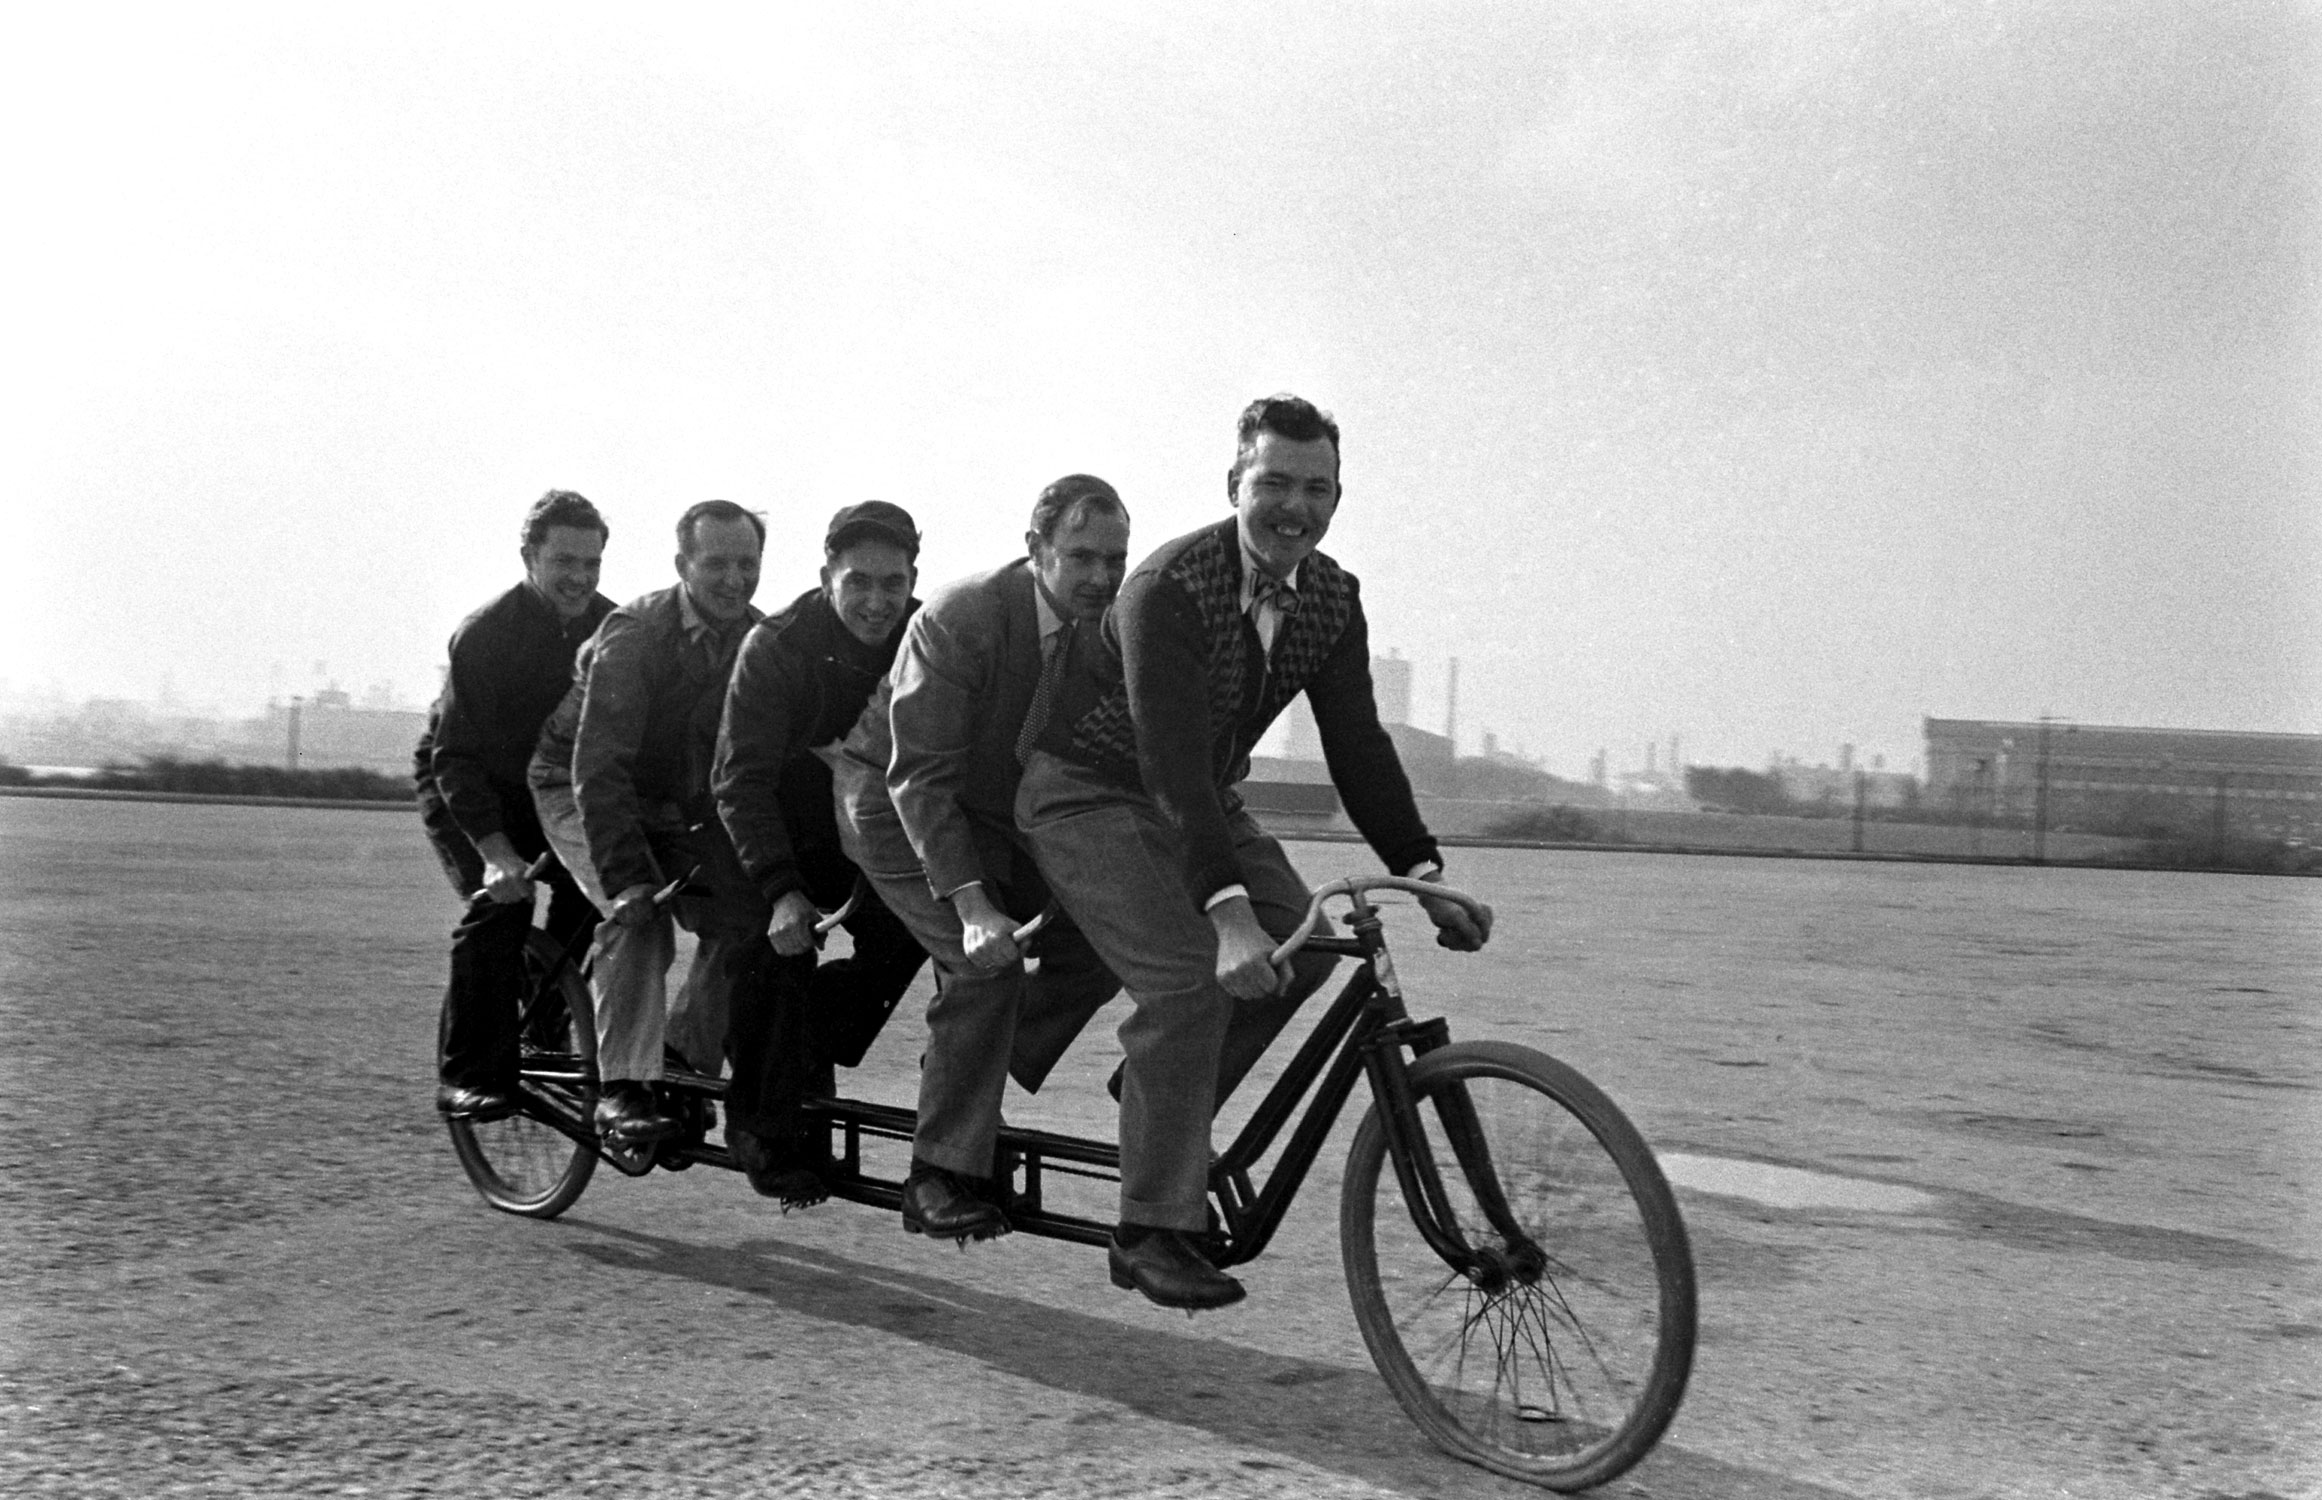 Men on bike, Chicago, 1948.